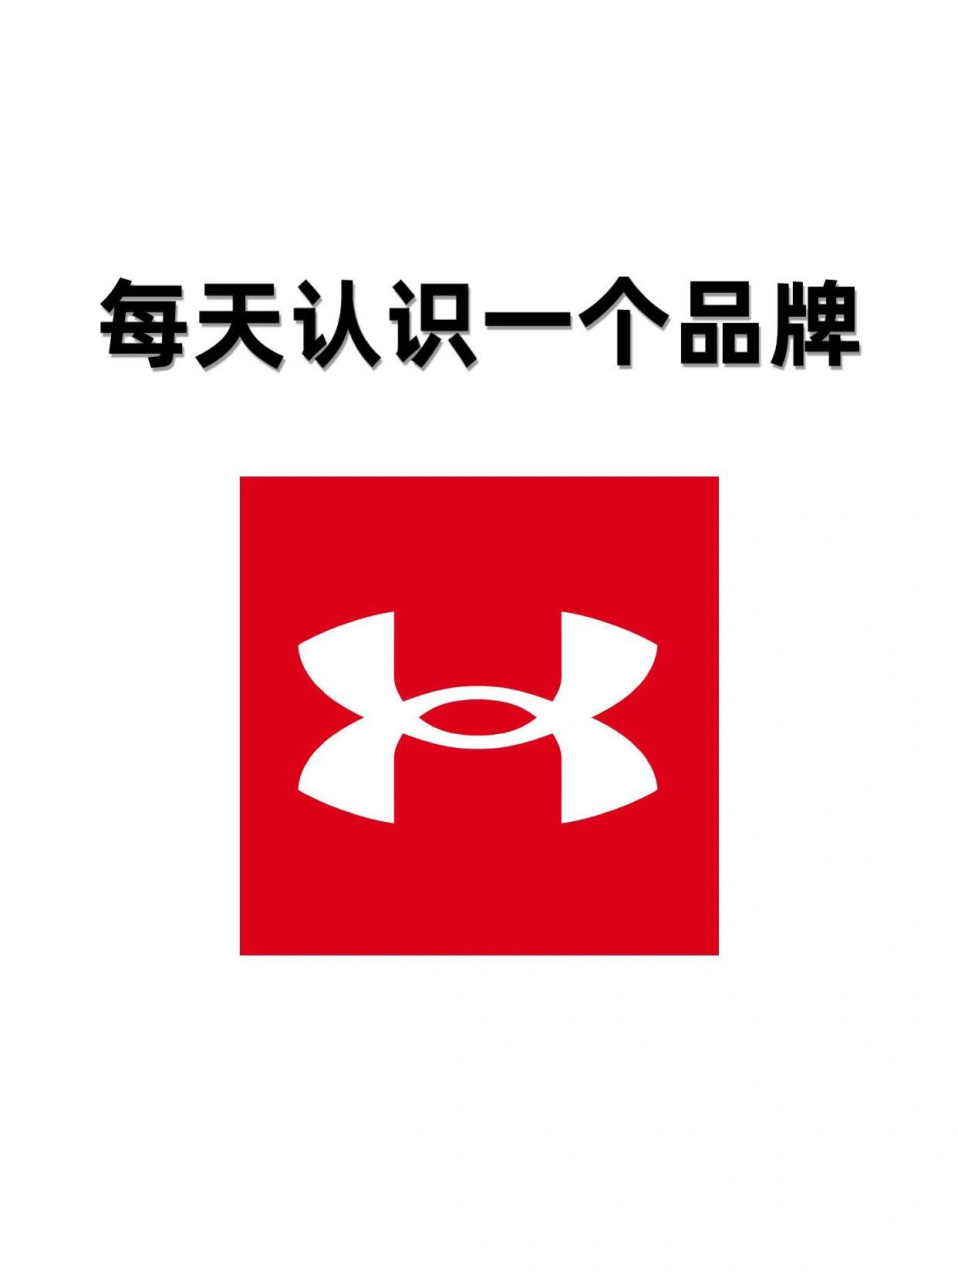 三个框的运动品牌logo图片